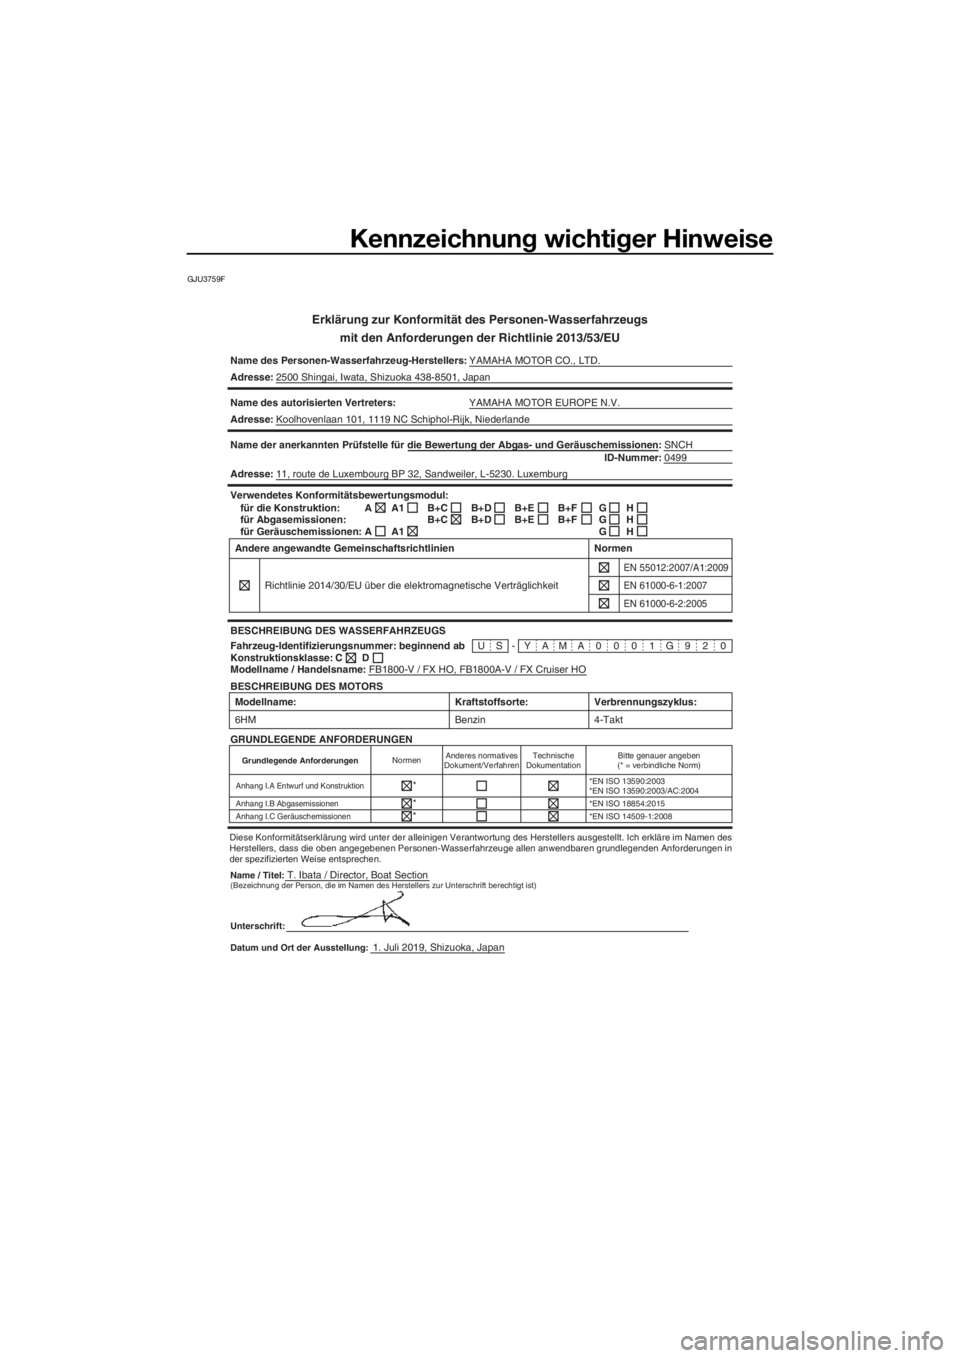 YAMAHA FX HO CRUISER 2020  Betriebsanleitungen (in German) Kennzeichnung wichtiger Hinweise
GJU3759F
Erklärung zur Konformität des Personen-Wasserfahrzeugs
mit den Anforderungen der Richtlinie 2013/53/EU
Name des Personen-Wasserfahrzeug-Herstellers:YAMAHA M